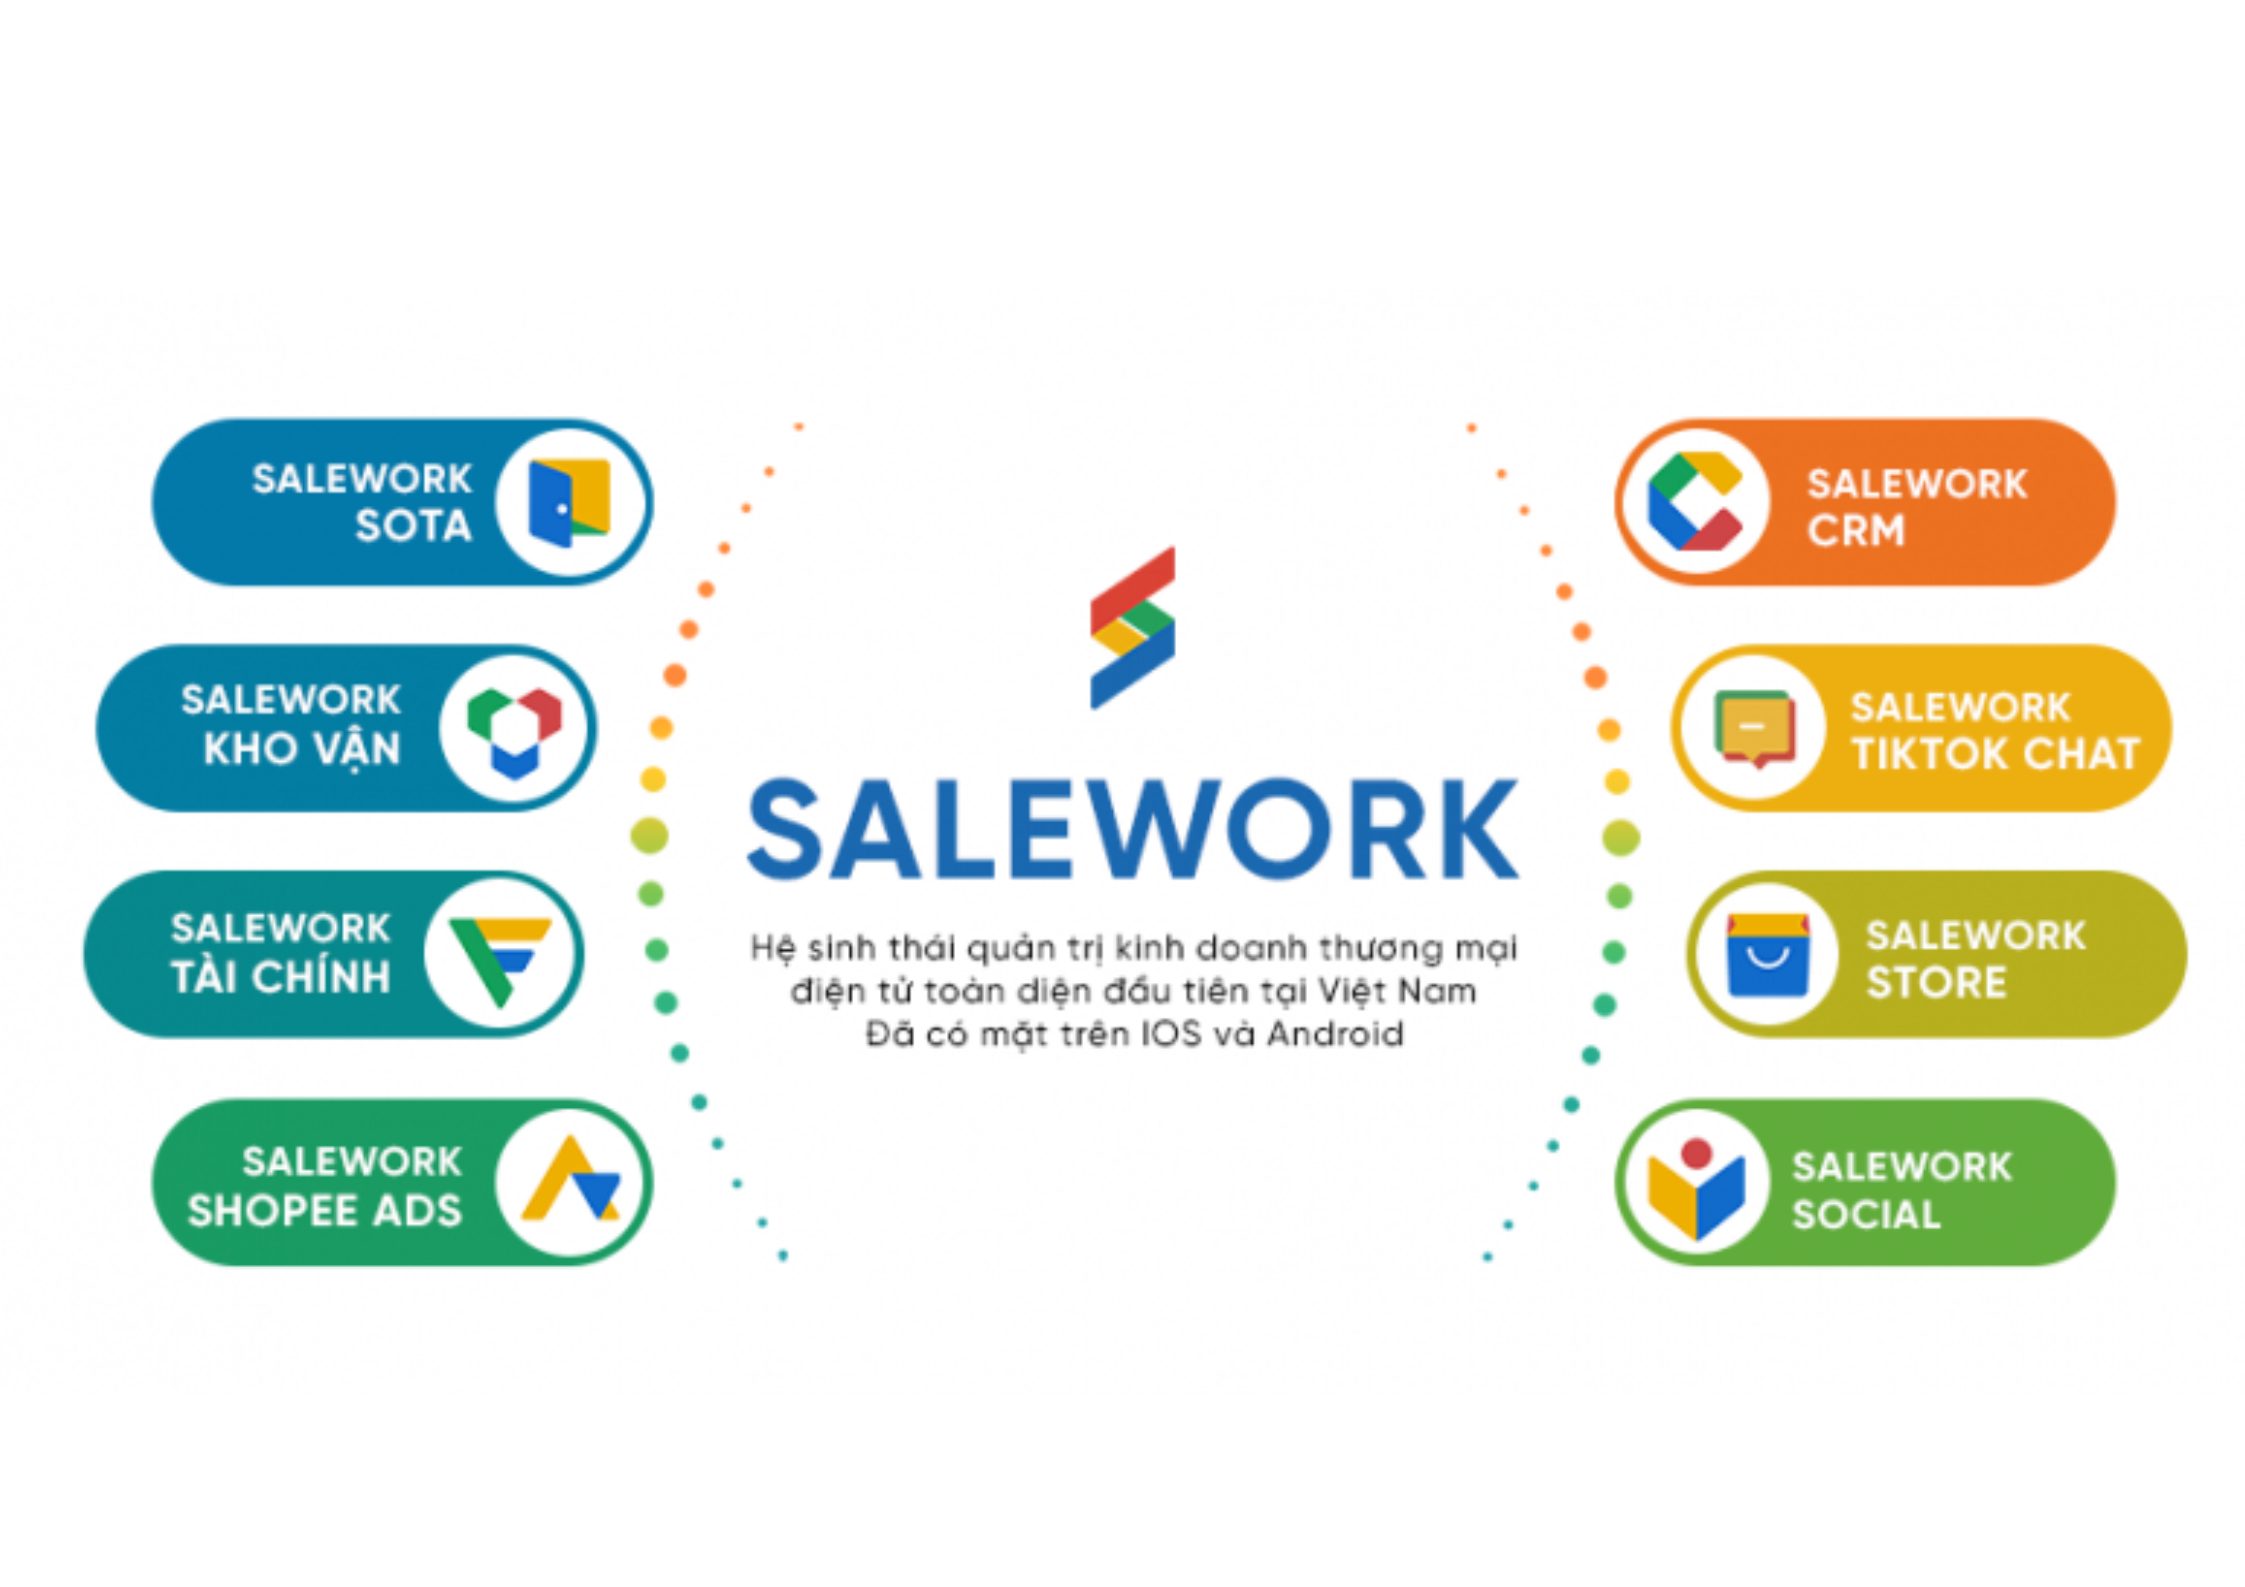 [Baodansinh.vn] Tối ưu hiệu quả kinh doanh với phần mềm quản lý bán hàng online Salework - 9